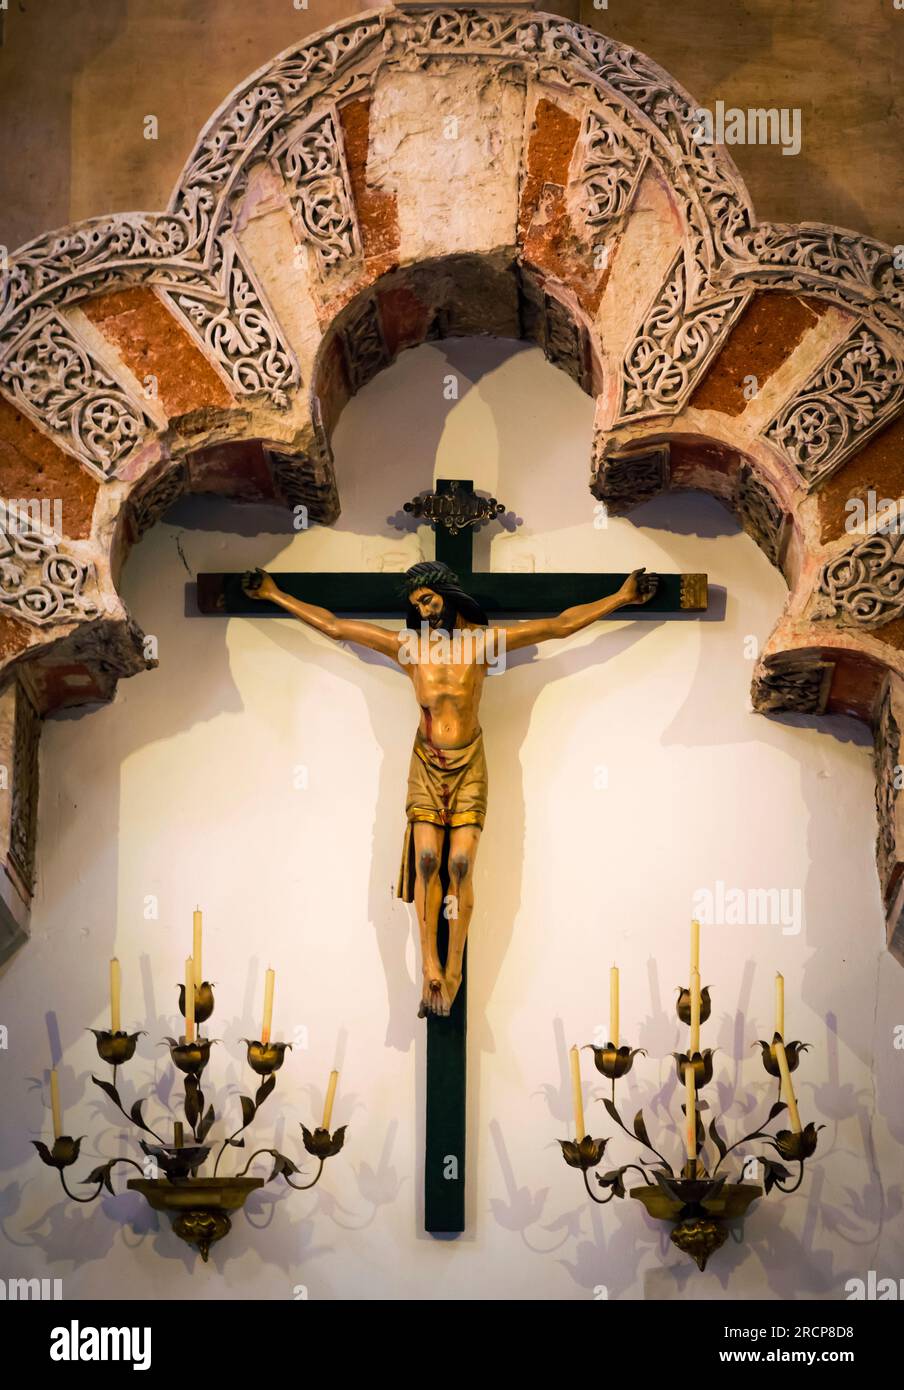 Cordoue, province de Cordoue, Andalousie, sud de l'Espagne. Intérieur de la Grande Mosquée, la Mezquita. Un crucifix, symbole du christianisme, est suspendu sous A. Banque D'Images